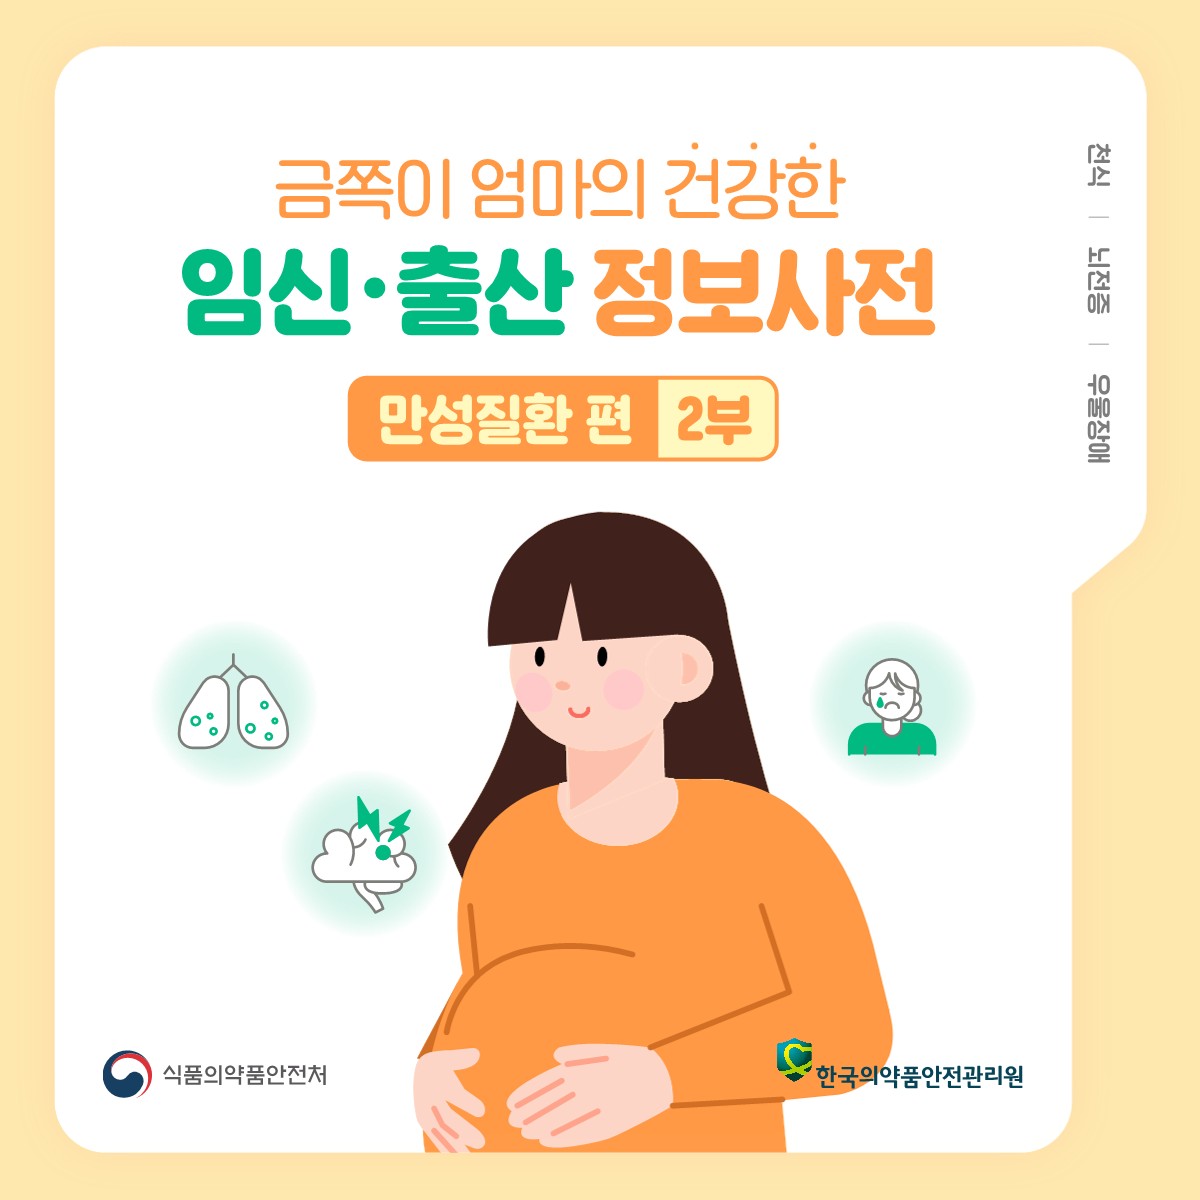 금쪽이 엄마의 건강한 임신·출산 정보사전 - 만성질환편 2부, 천식/뇌전증/우울장애, 식품의약품안전처, 한국의약품안전관리원